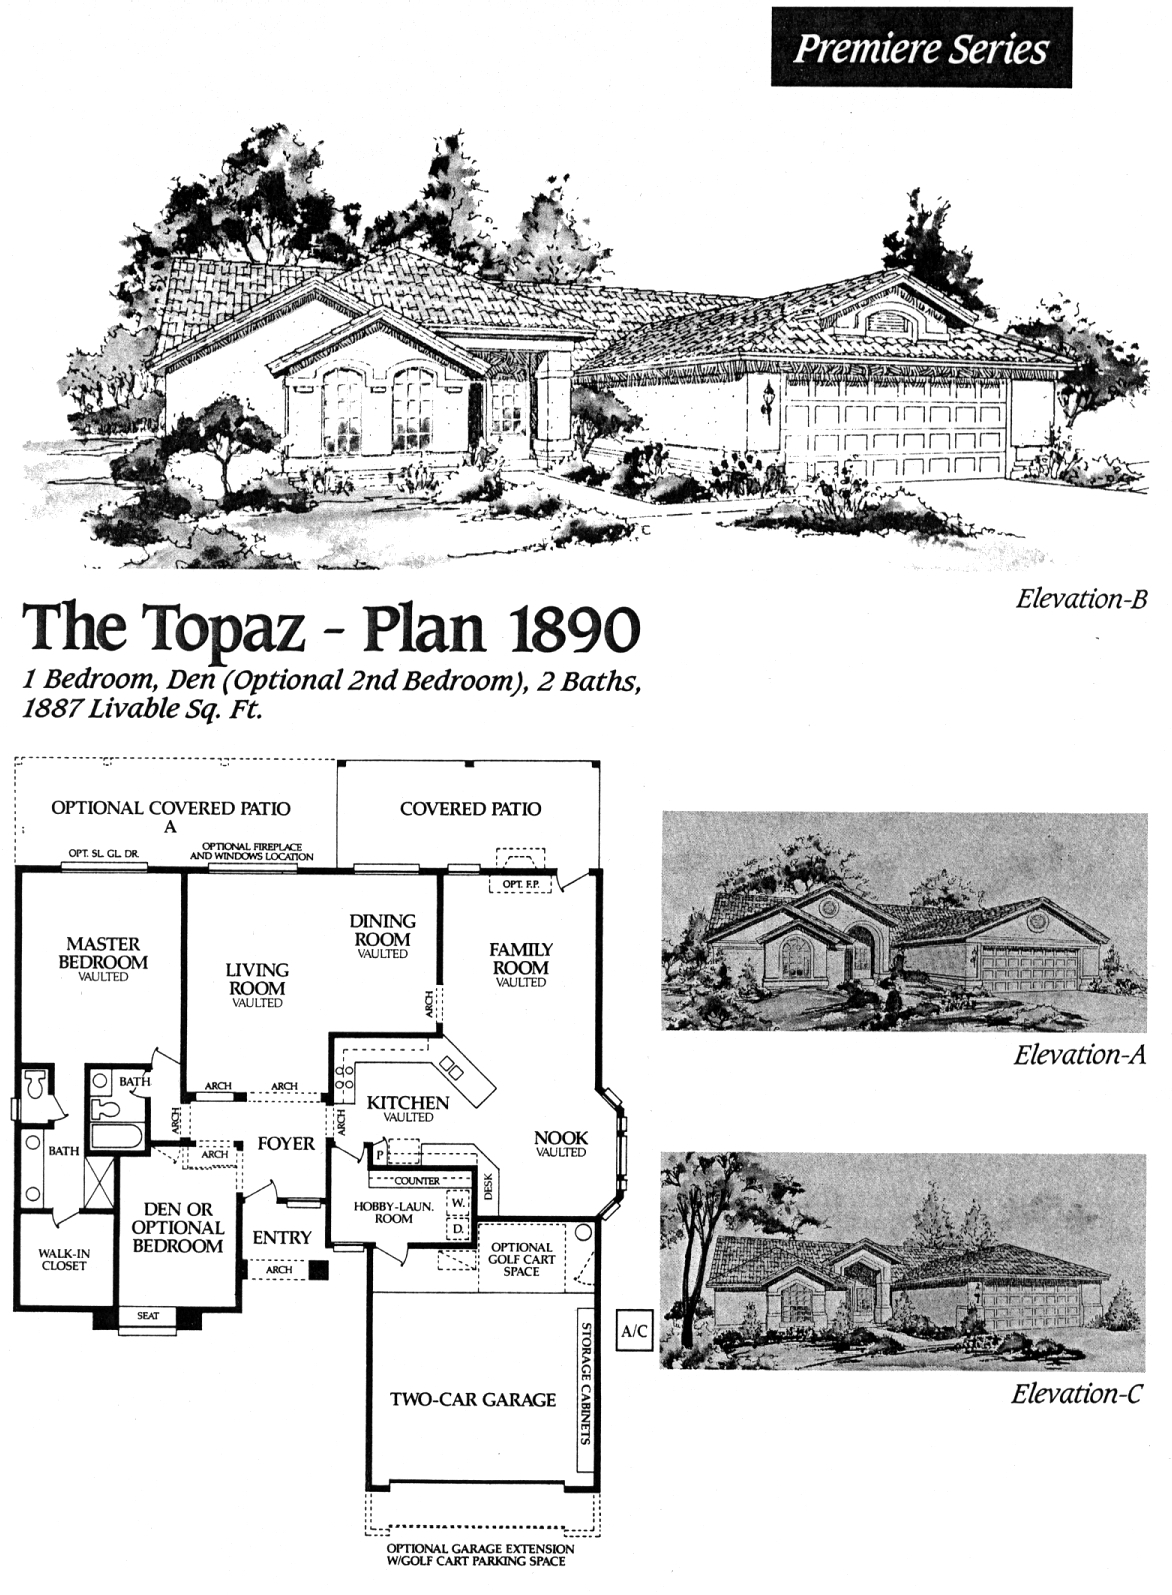 TOPAZ 1890